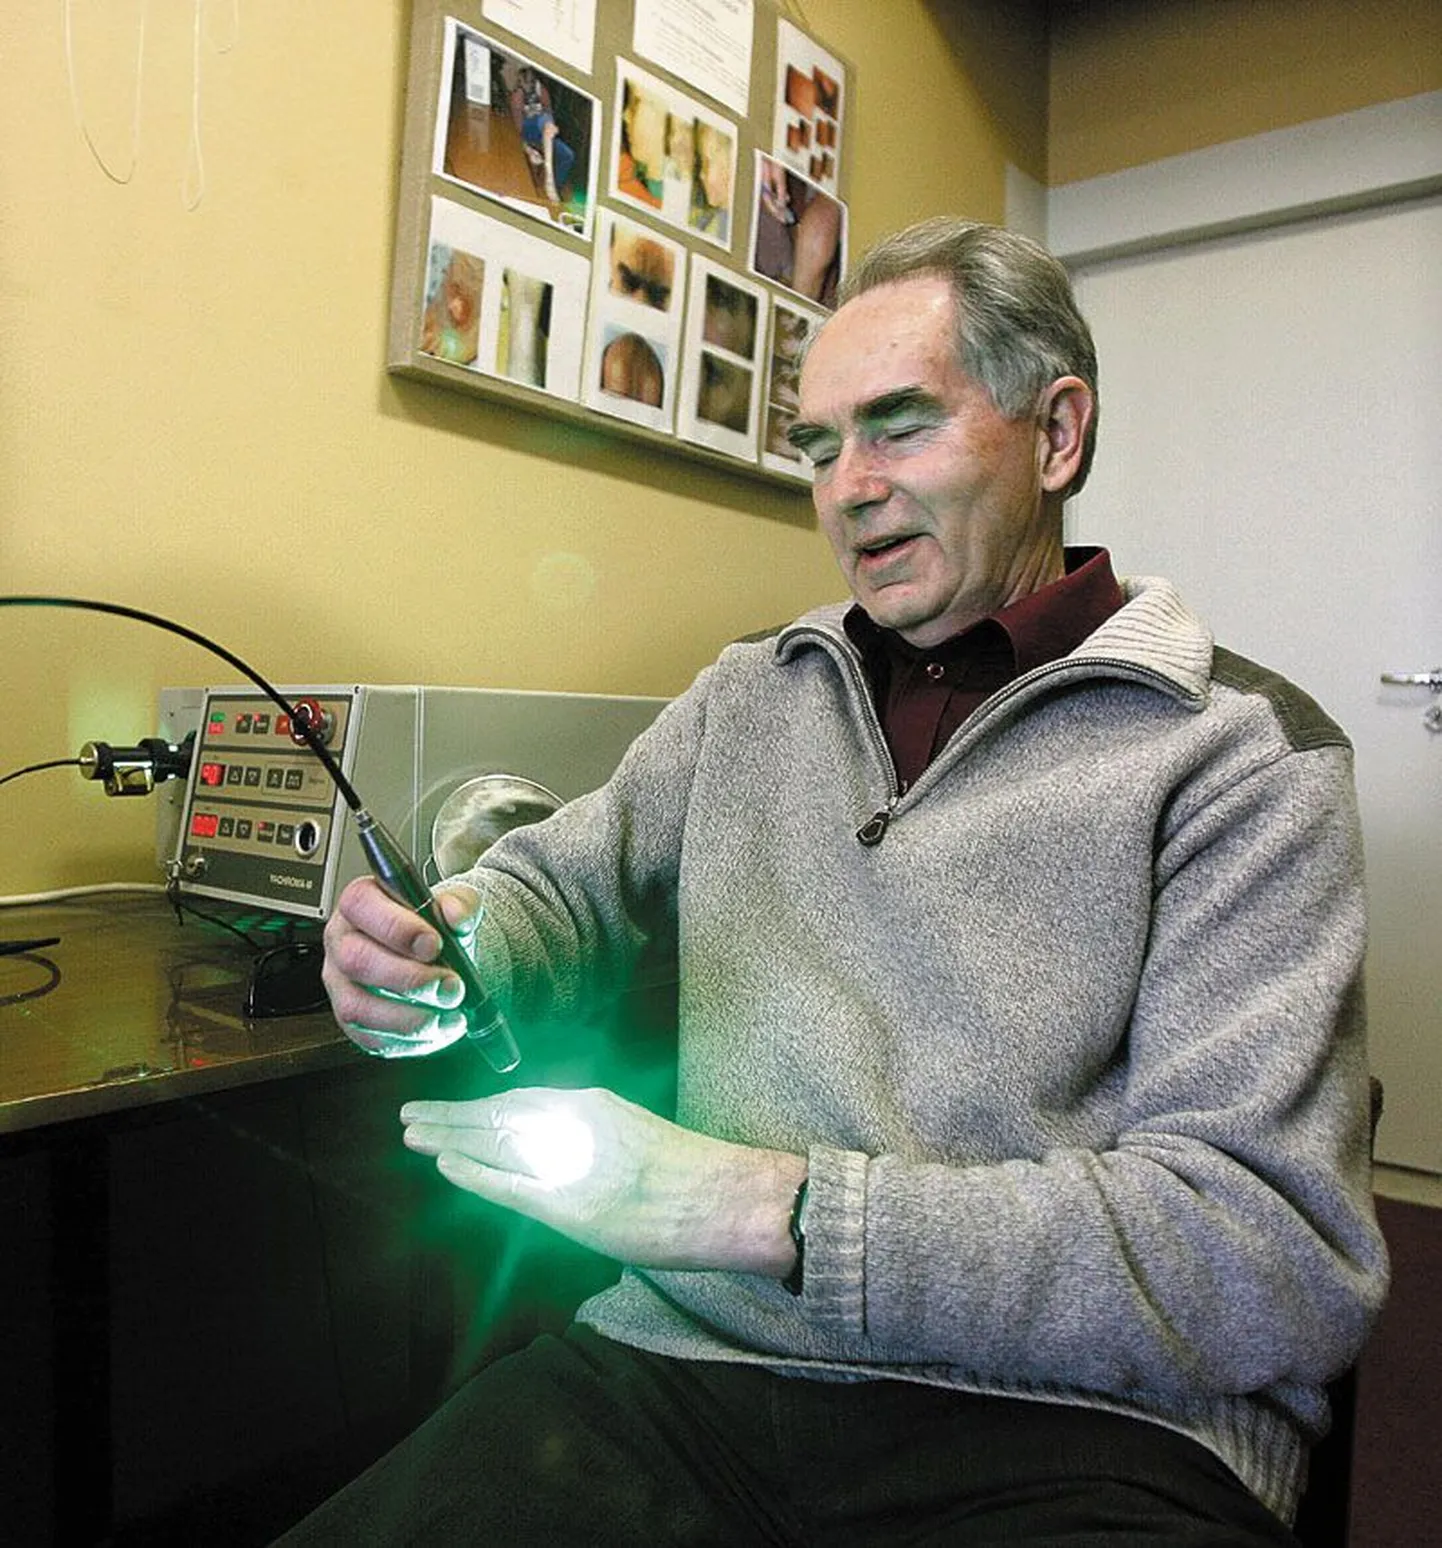 Ise tehtud, hästi tehtud: füüsikadoktor Rein Kink näitab omatehtud laseriga, mismoodi ta ravis terveks sportides tõsiselt vigastada saanud põlve.